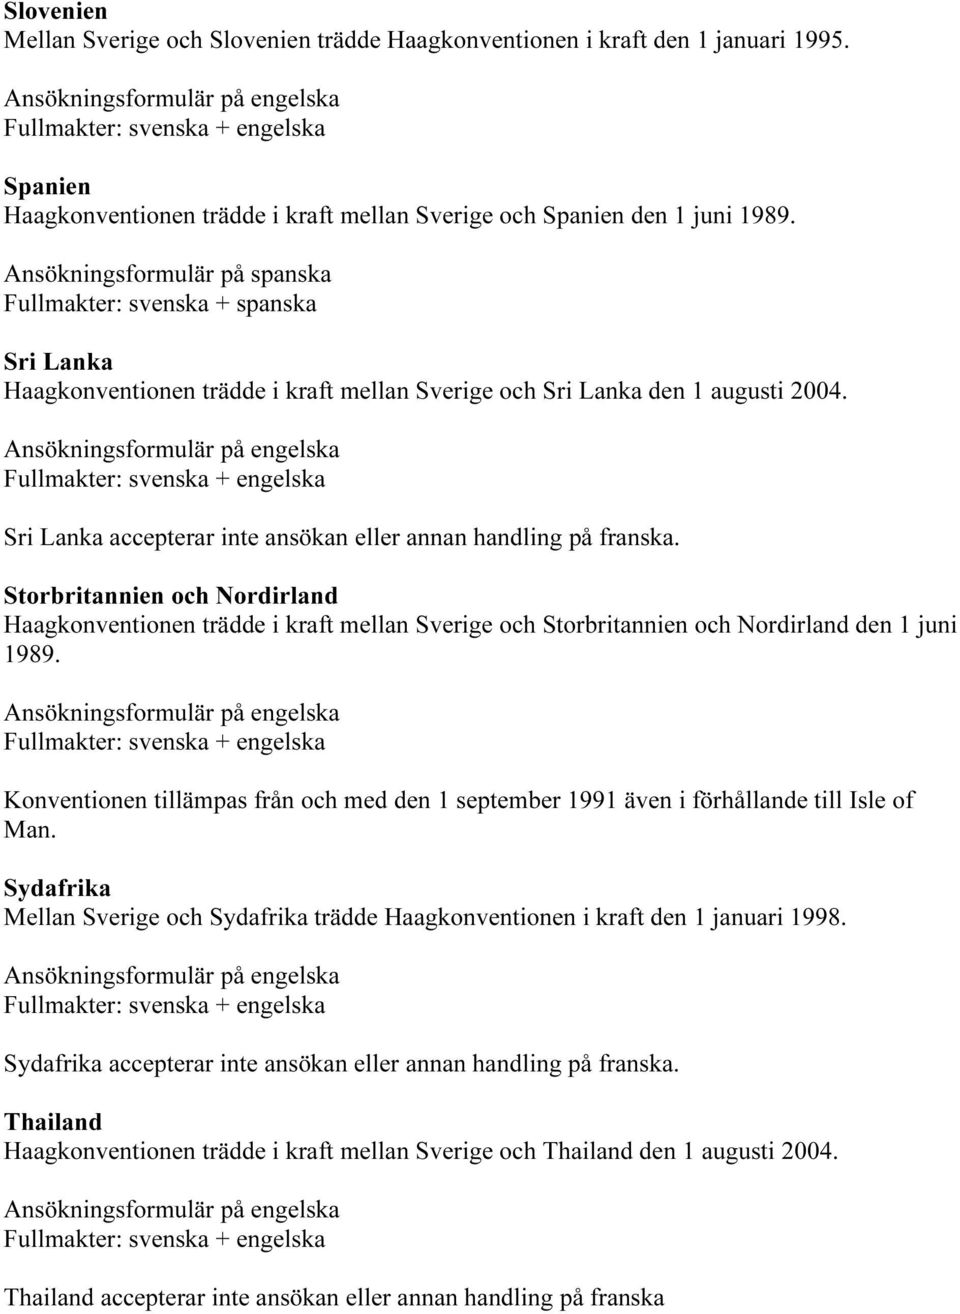 Sri Lanka accepterar inte ansökan eller annan handling på franska. Storbritannien och Nordirland Haagkonventionen trädde i kraft mellan Sverige och Storbritannien och Nordirland den 1 juni 1989.